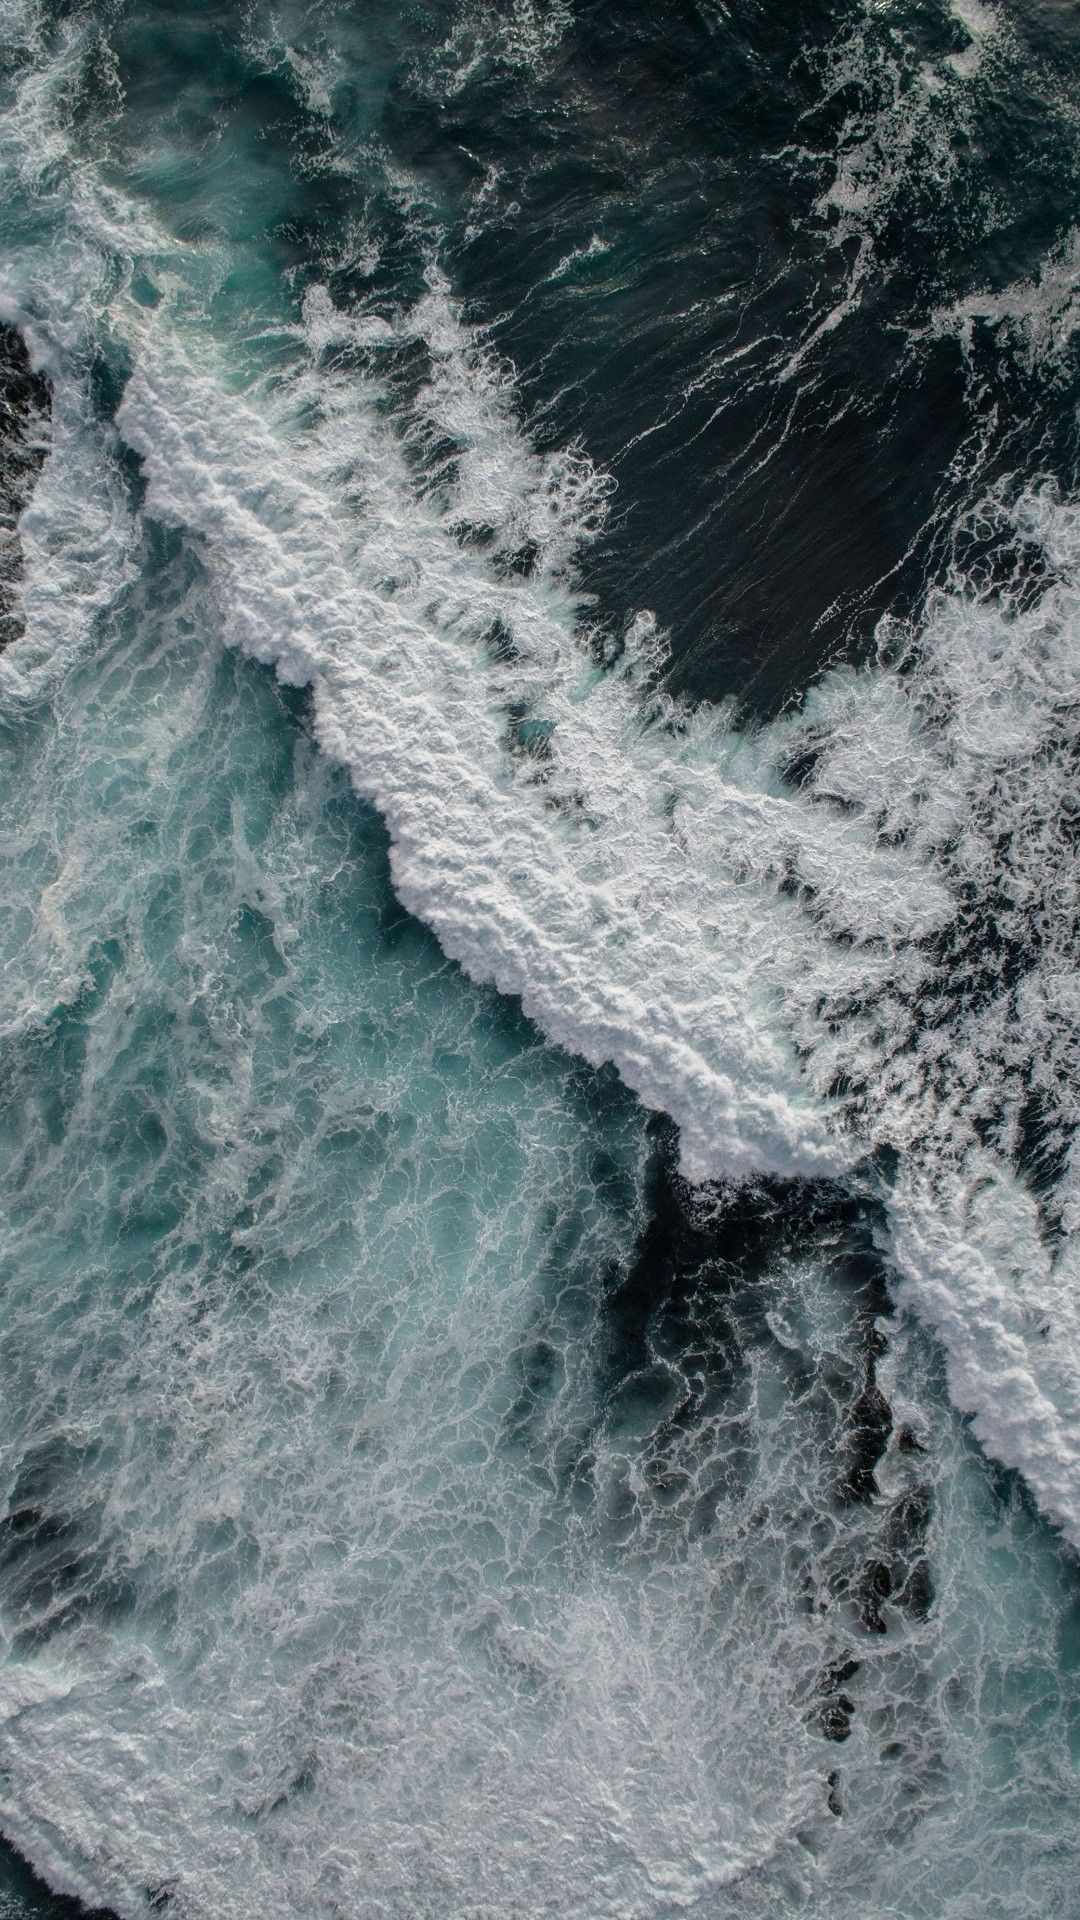 Ocean iPhone Wallpaper